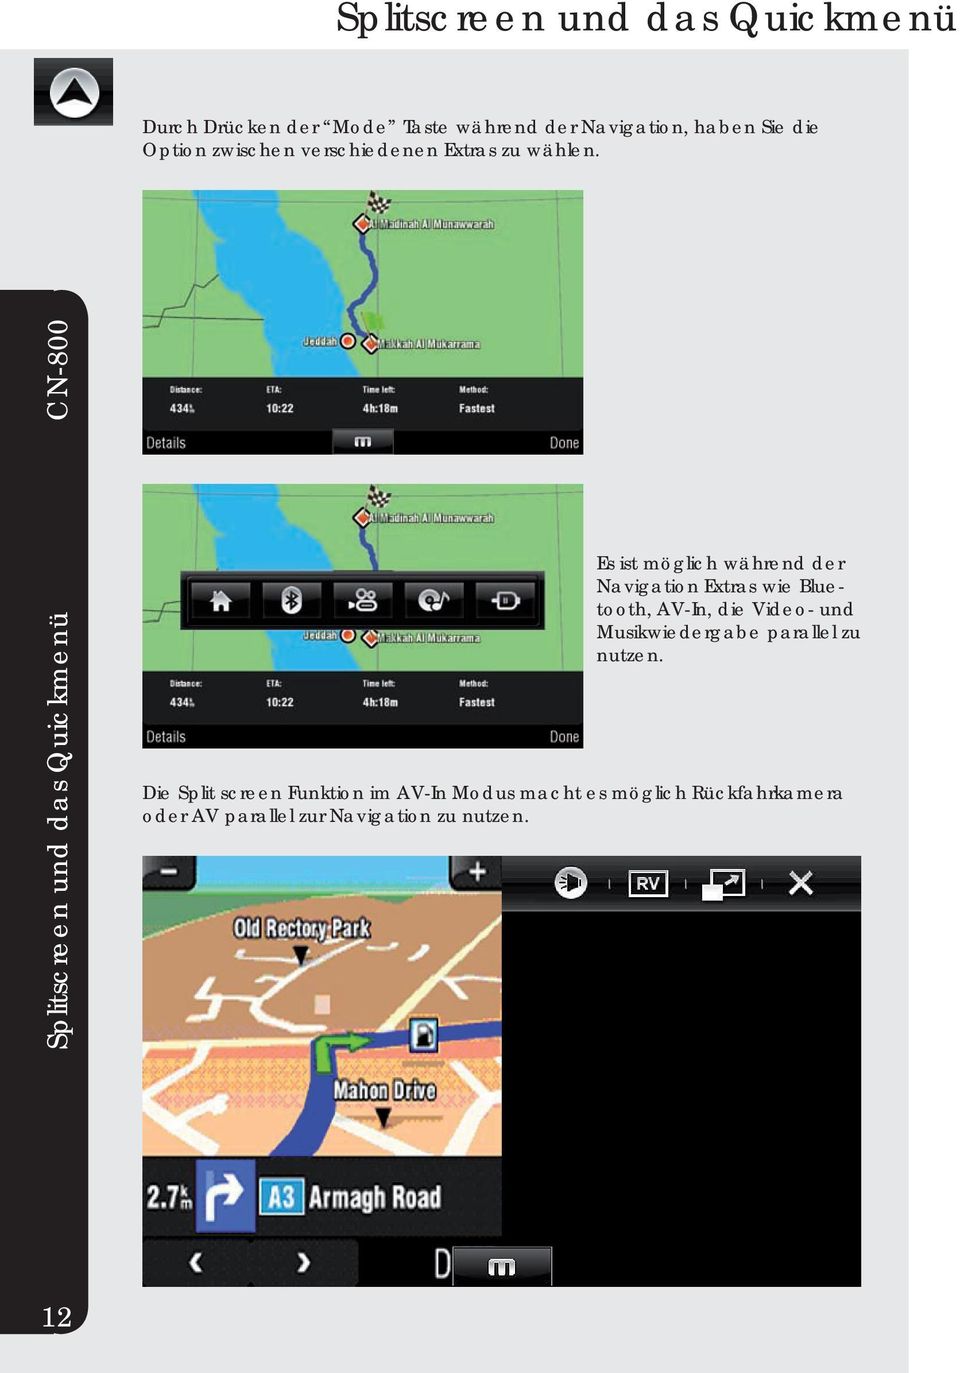 Splitscreen und das Quickmenü Es ist möglich während der Navigation Extras wie Bluetooth, AV-In, die